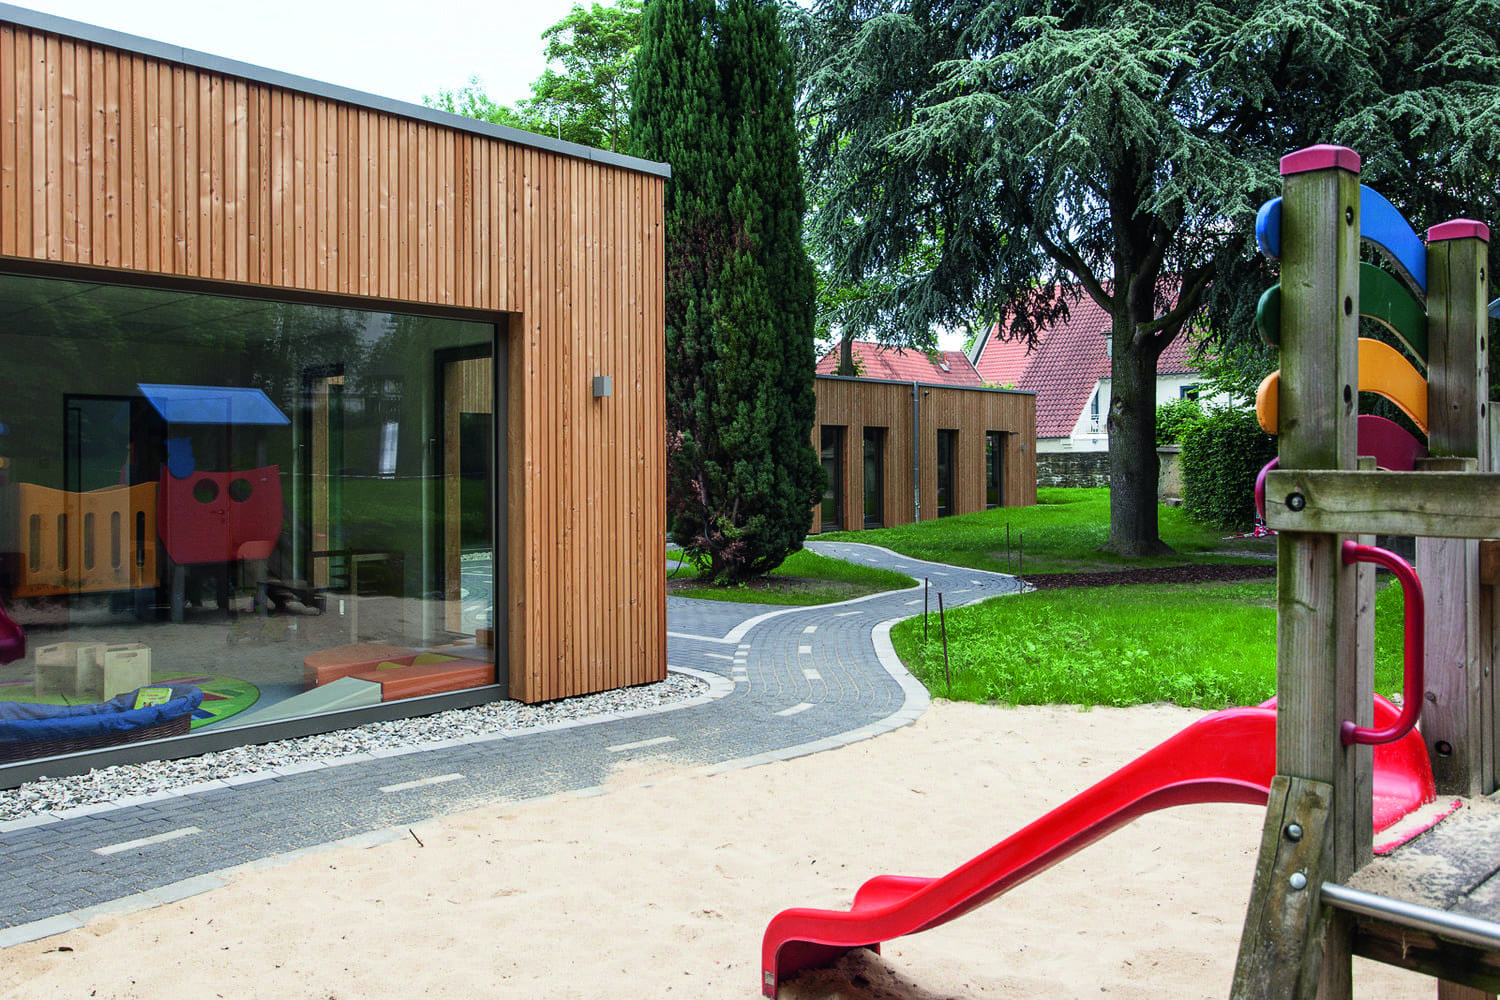 St. Patrokli Kindergarten / Bildquelle: Rinsdorf Ströcker Architekten GmbH